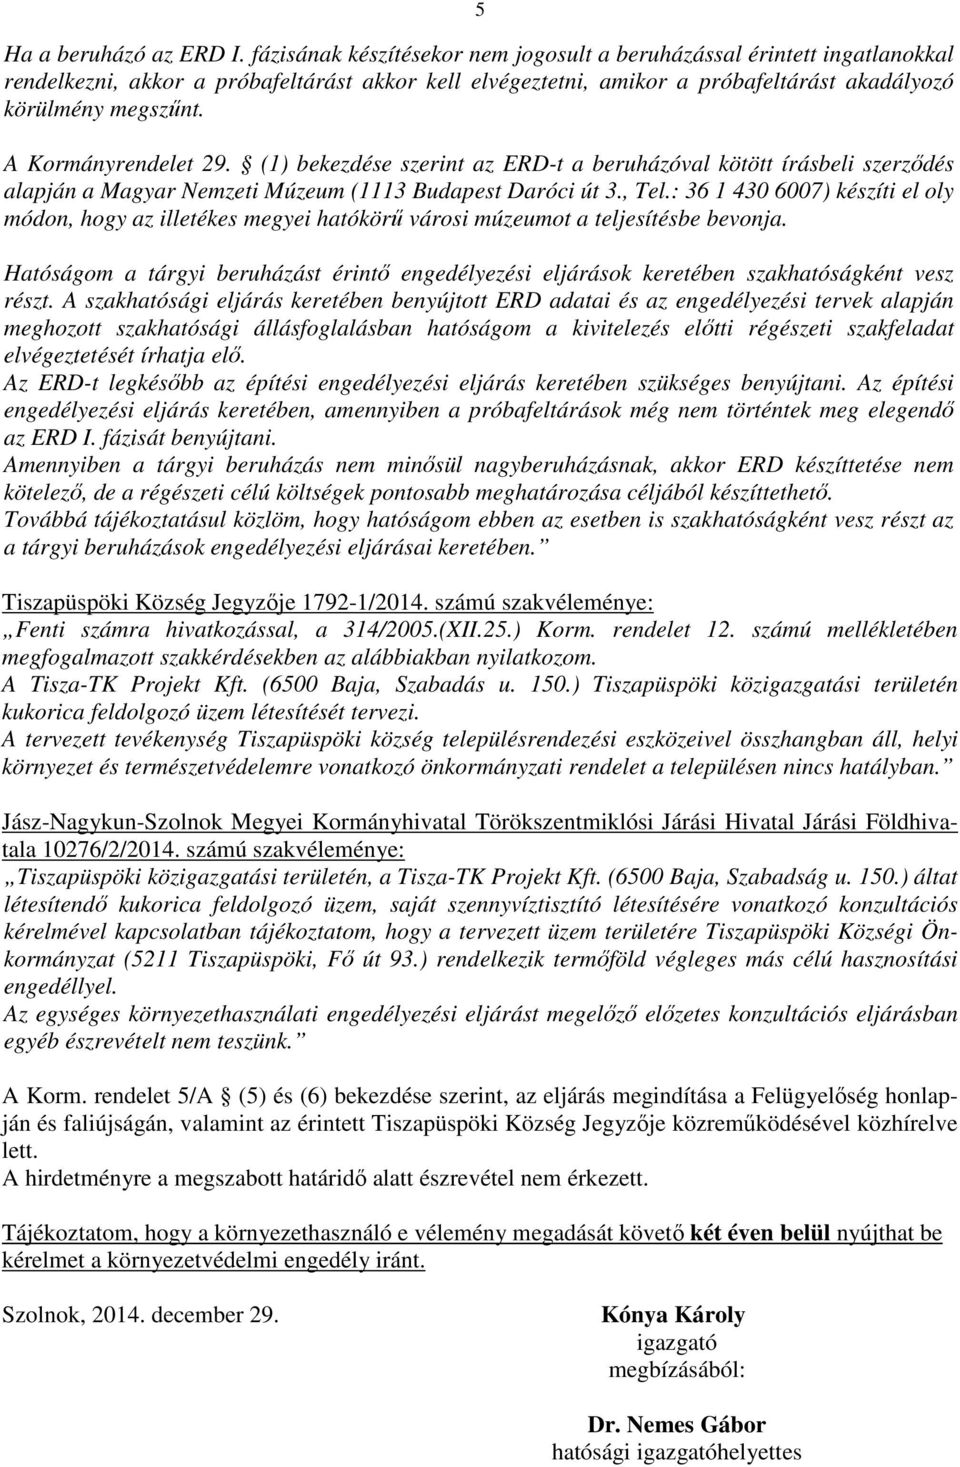 A Kormányrendelet 29. (1) bekezdése szerint az ERD-t a beruházóval kötött írásbeli szerződés alapján a Magyar Nemzeti Múzeum (1113 Budapest Daróci út 3., Tel.